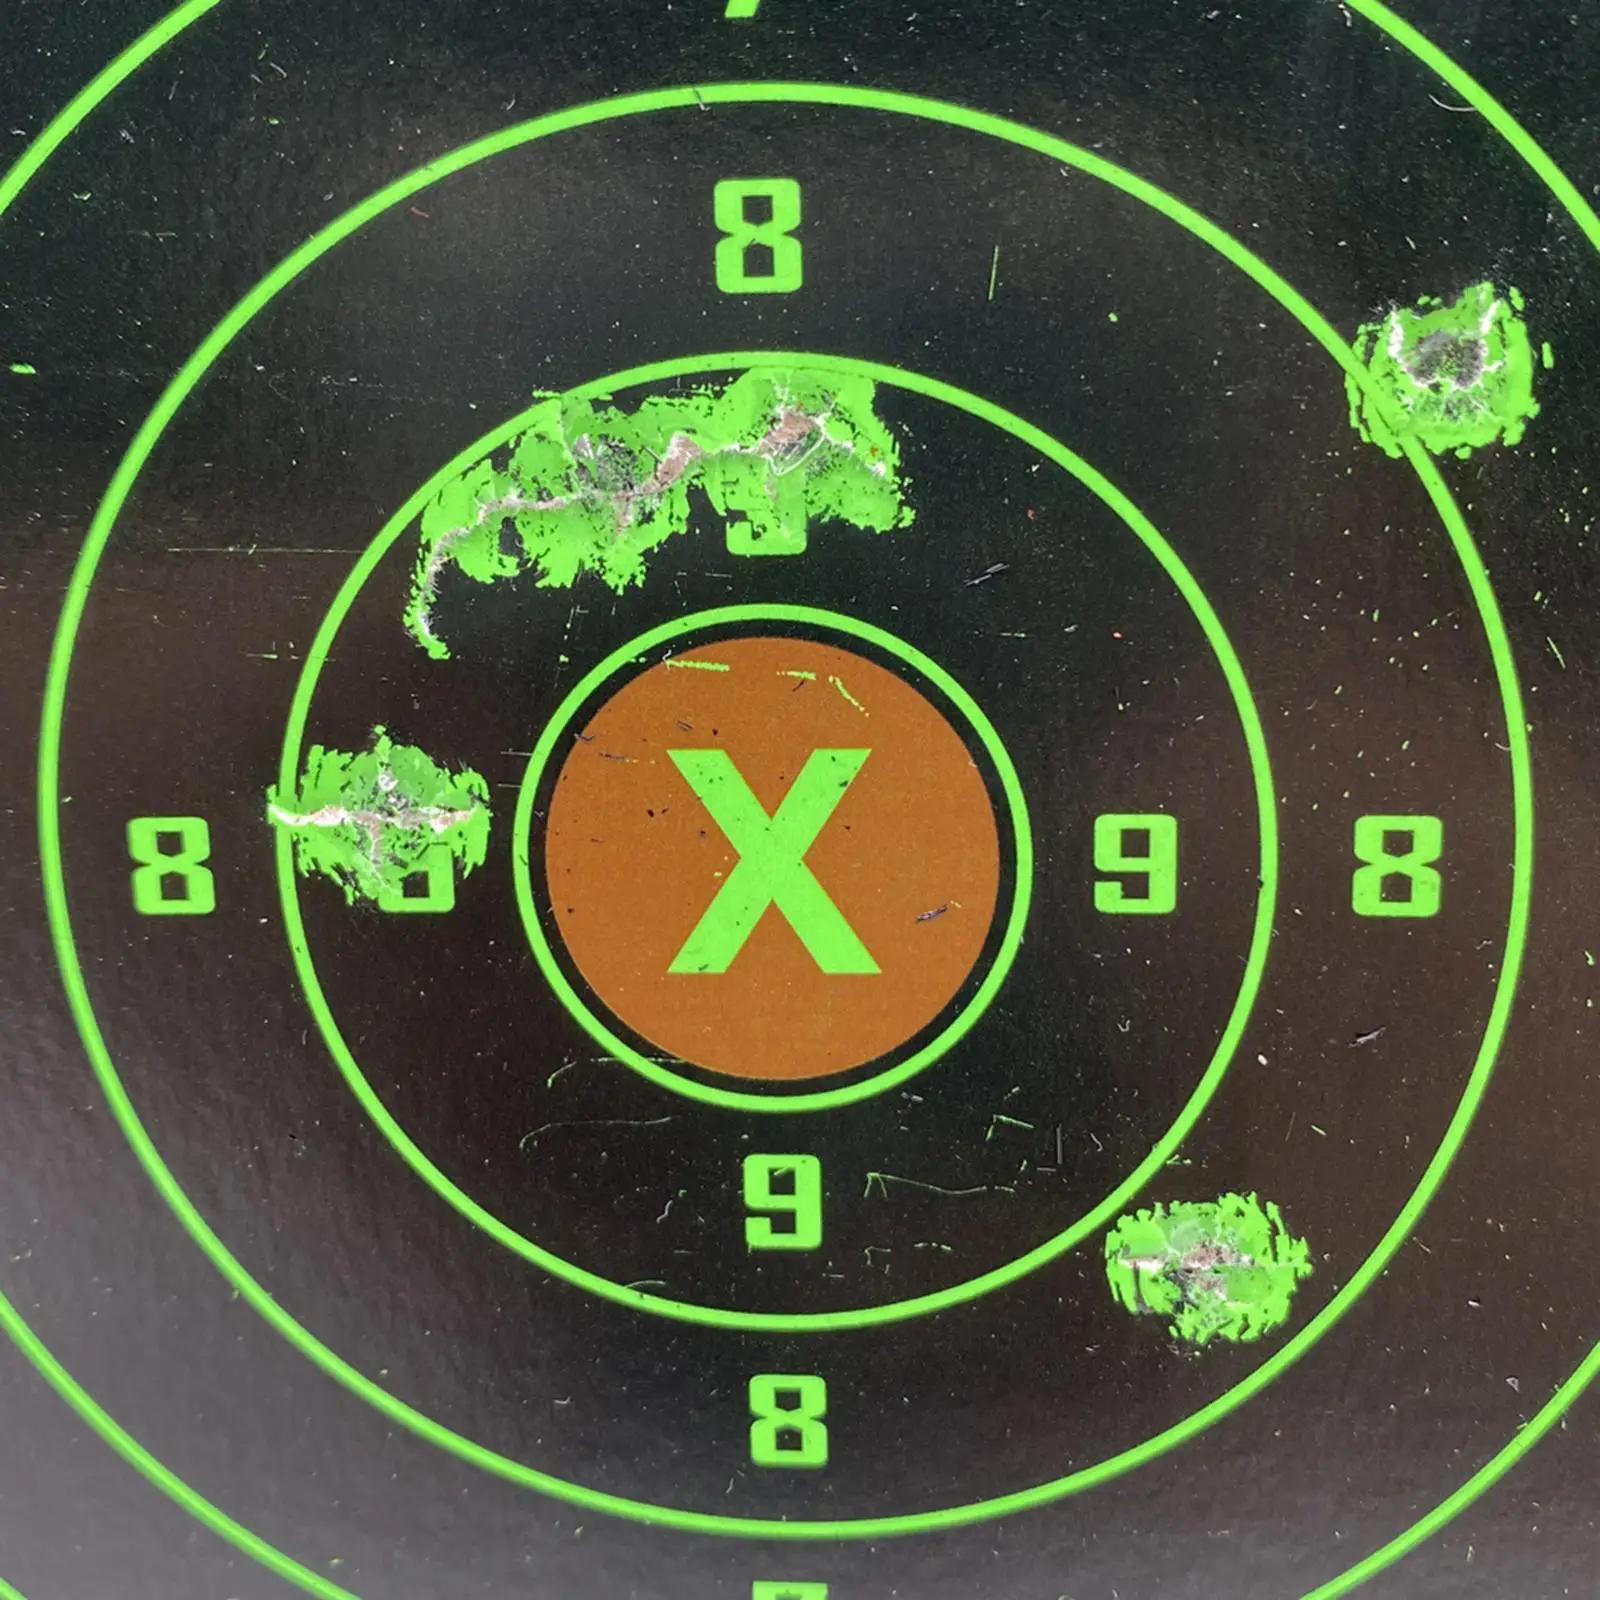 

20x Shooting Paper Target Hunting 5 5 Shotgun Practice Aim Training Aids